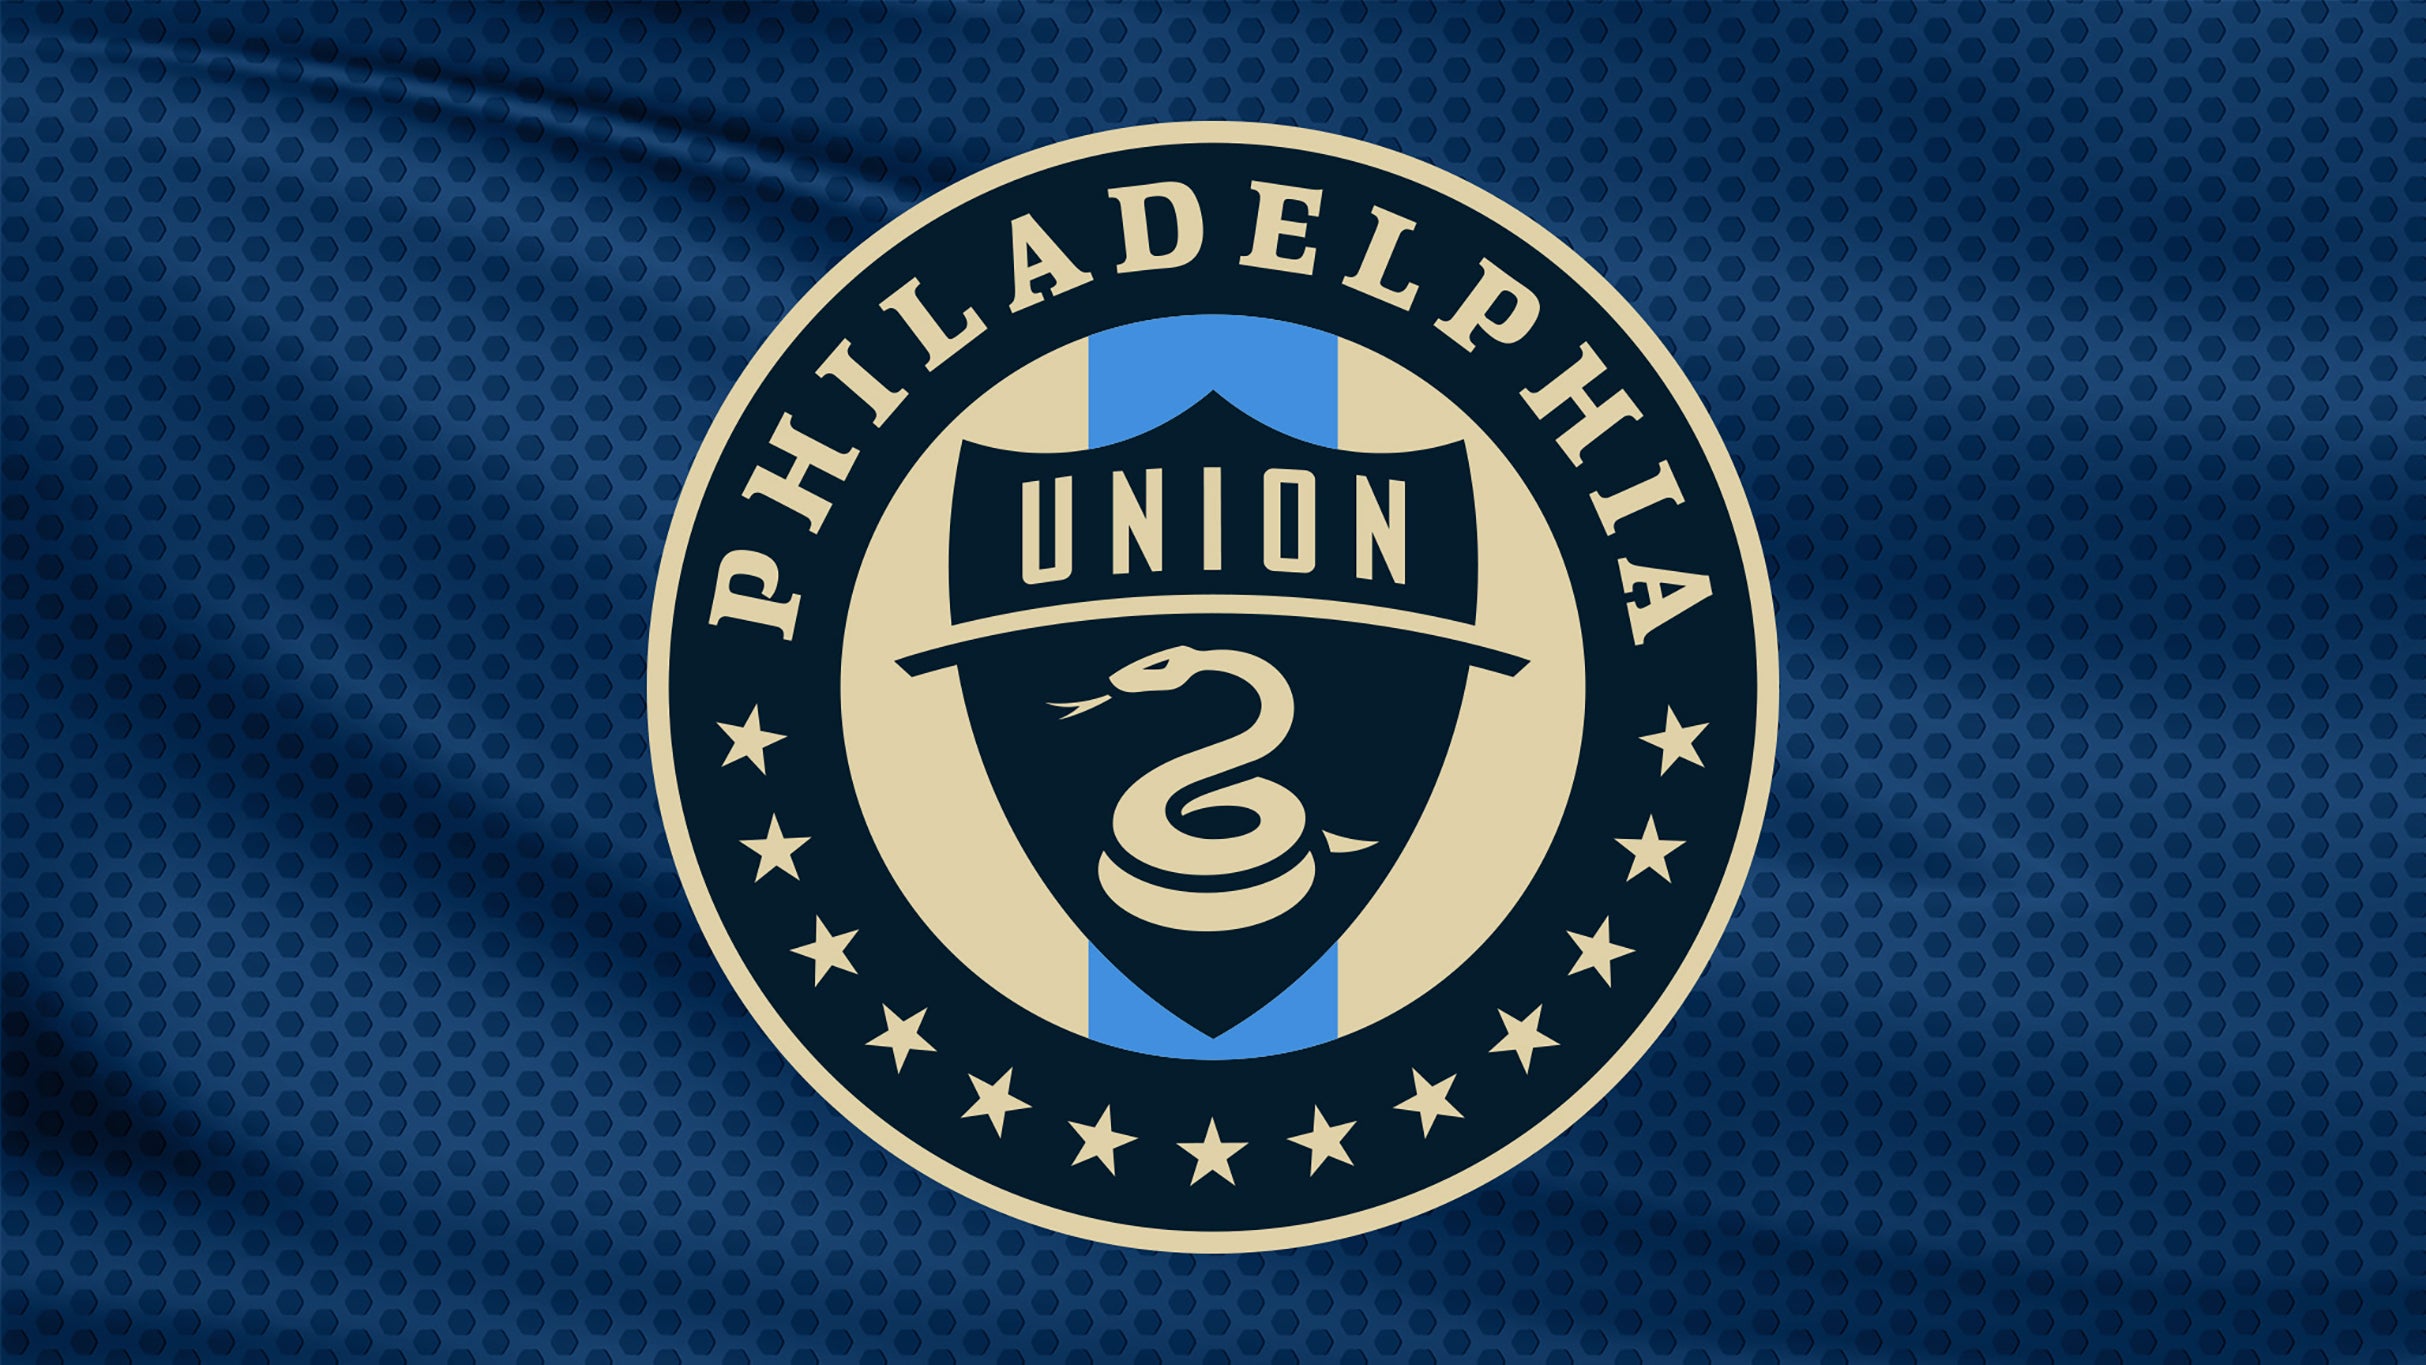 Philadelphia Union vs. Orlando City SC at Subaru Park